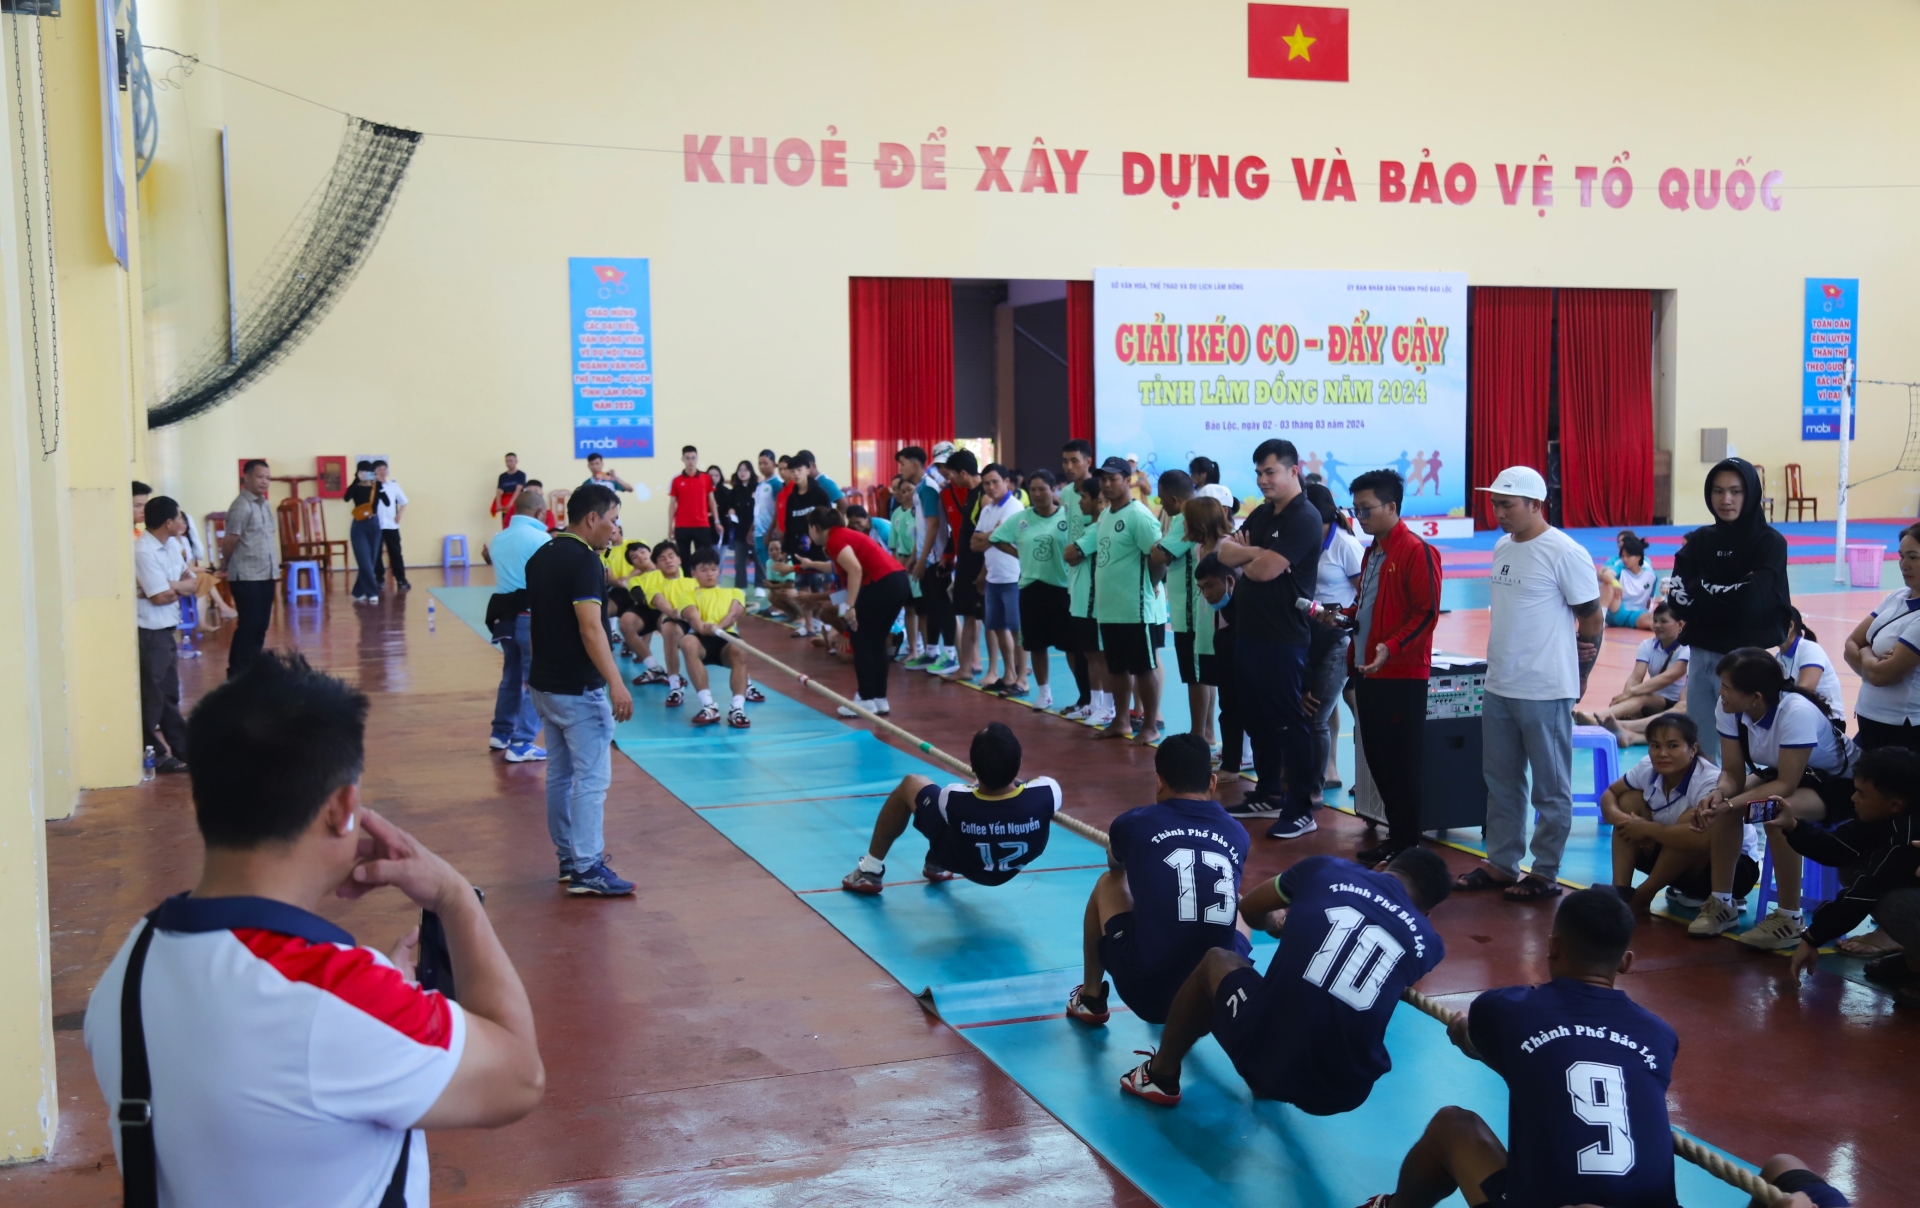 Trận chung kết môn kéo co nam diễn ra hấp dẫn giữa 2 đội TP Bảo Lộc và huyện Đạ Huoai